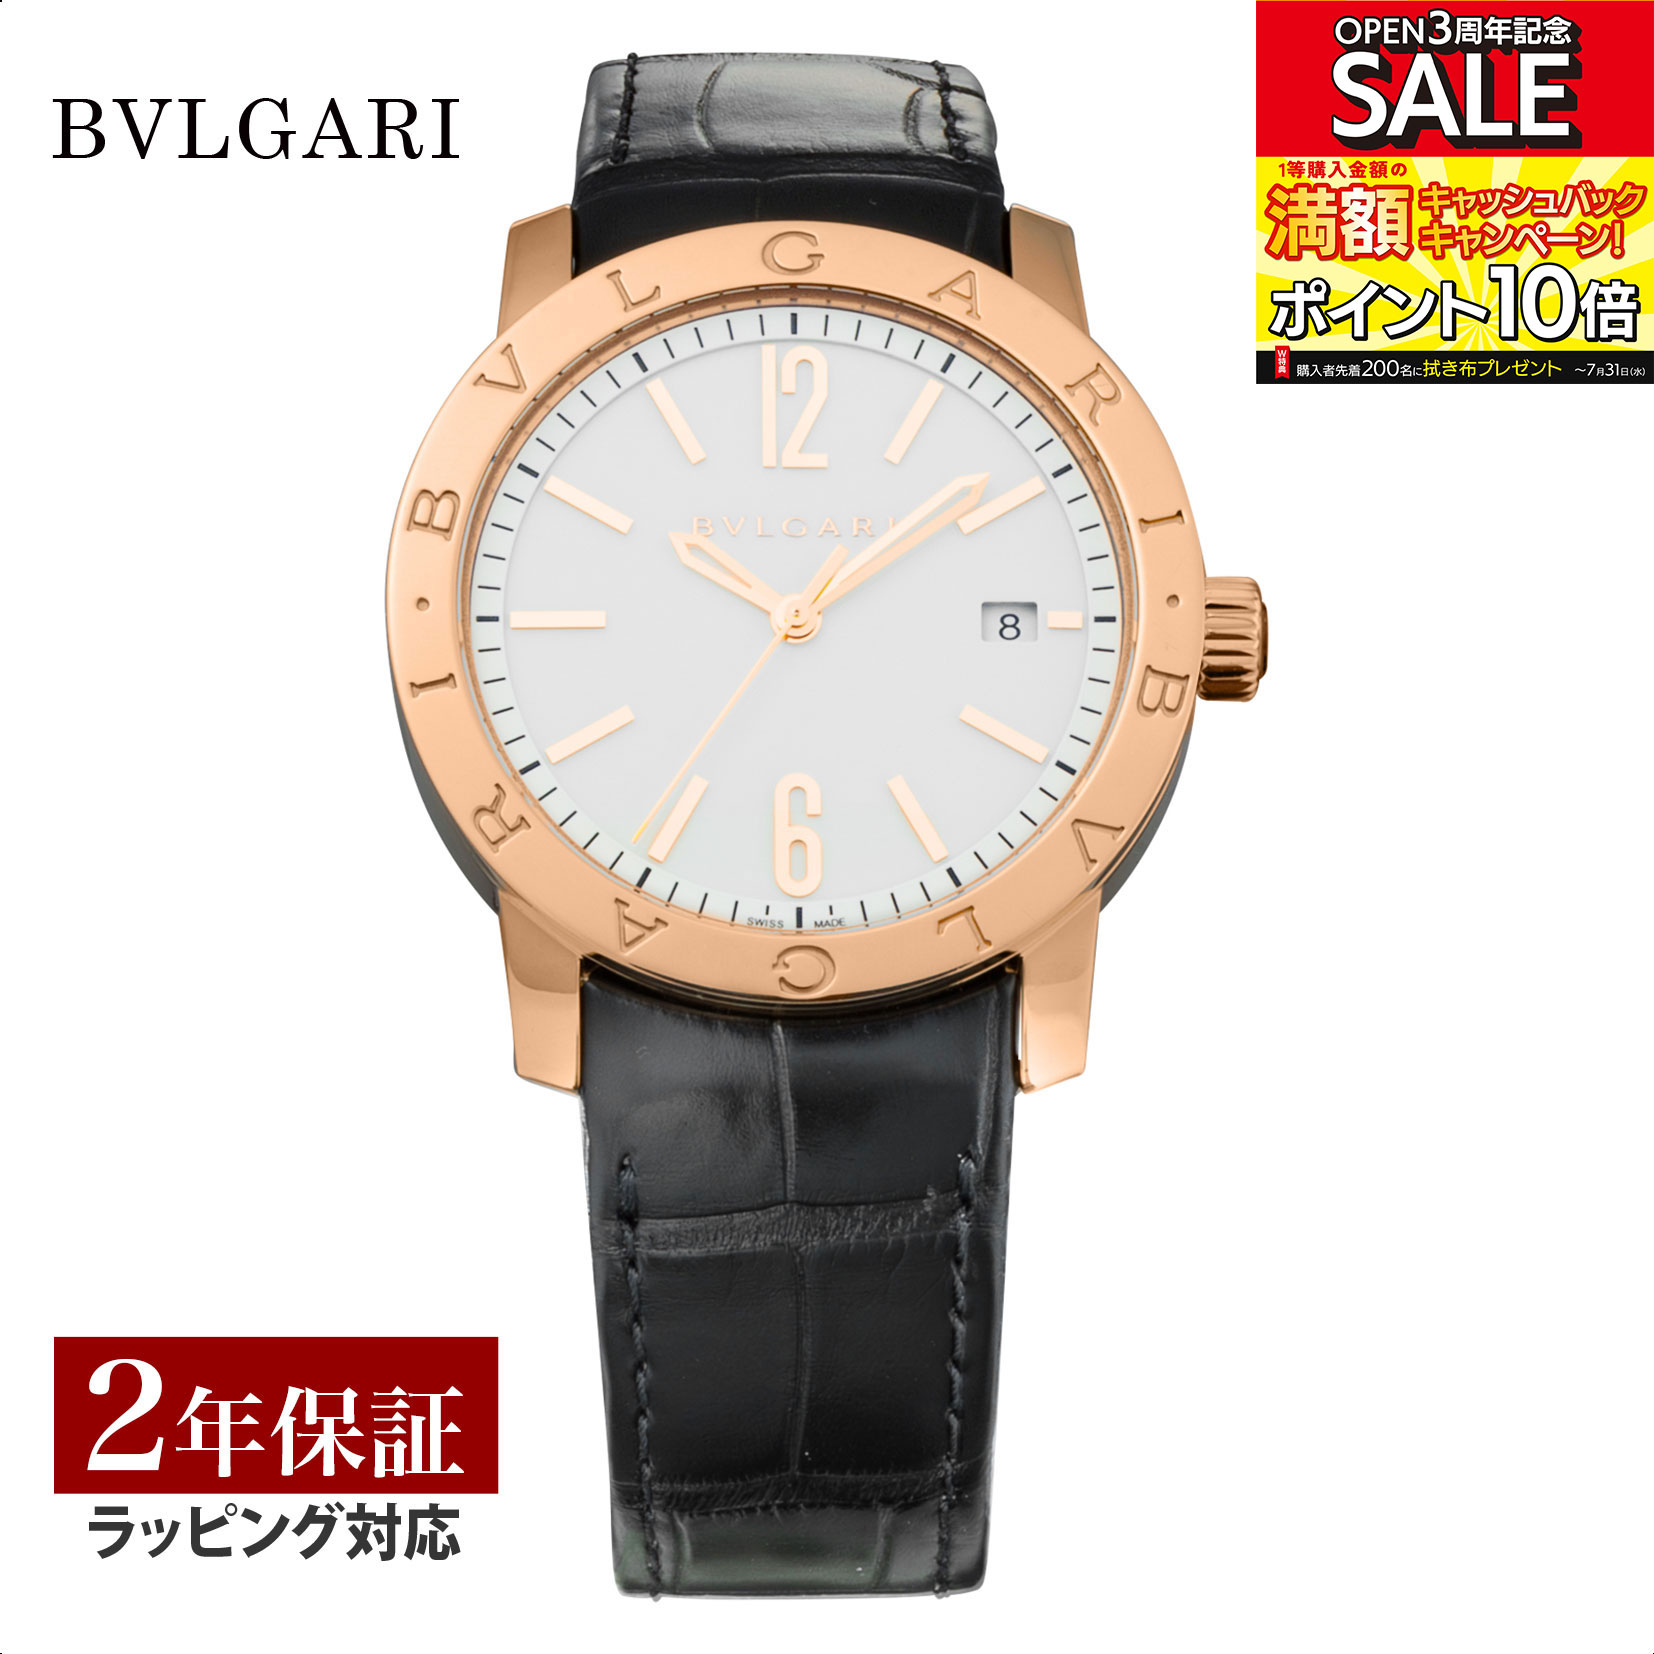 【レビューでブルガリディナー券】ブルガリ BVLGARI メンズ 時計 Bvlgari Bvlgari ブルガリブルガリ 自動巻 ホワイト BBP39WGLD 時計 腕時計 高級腕時計 ブランド